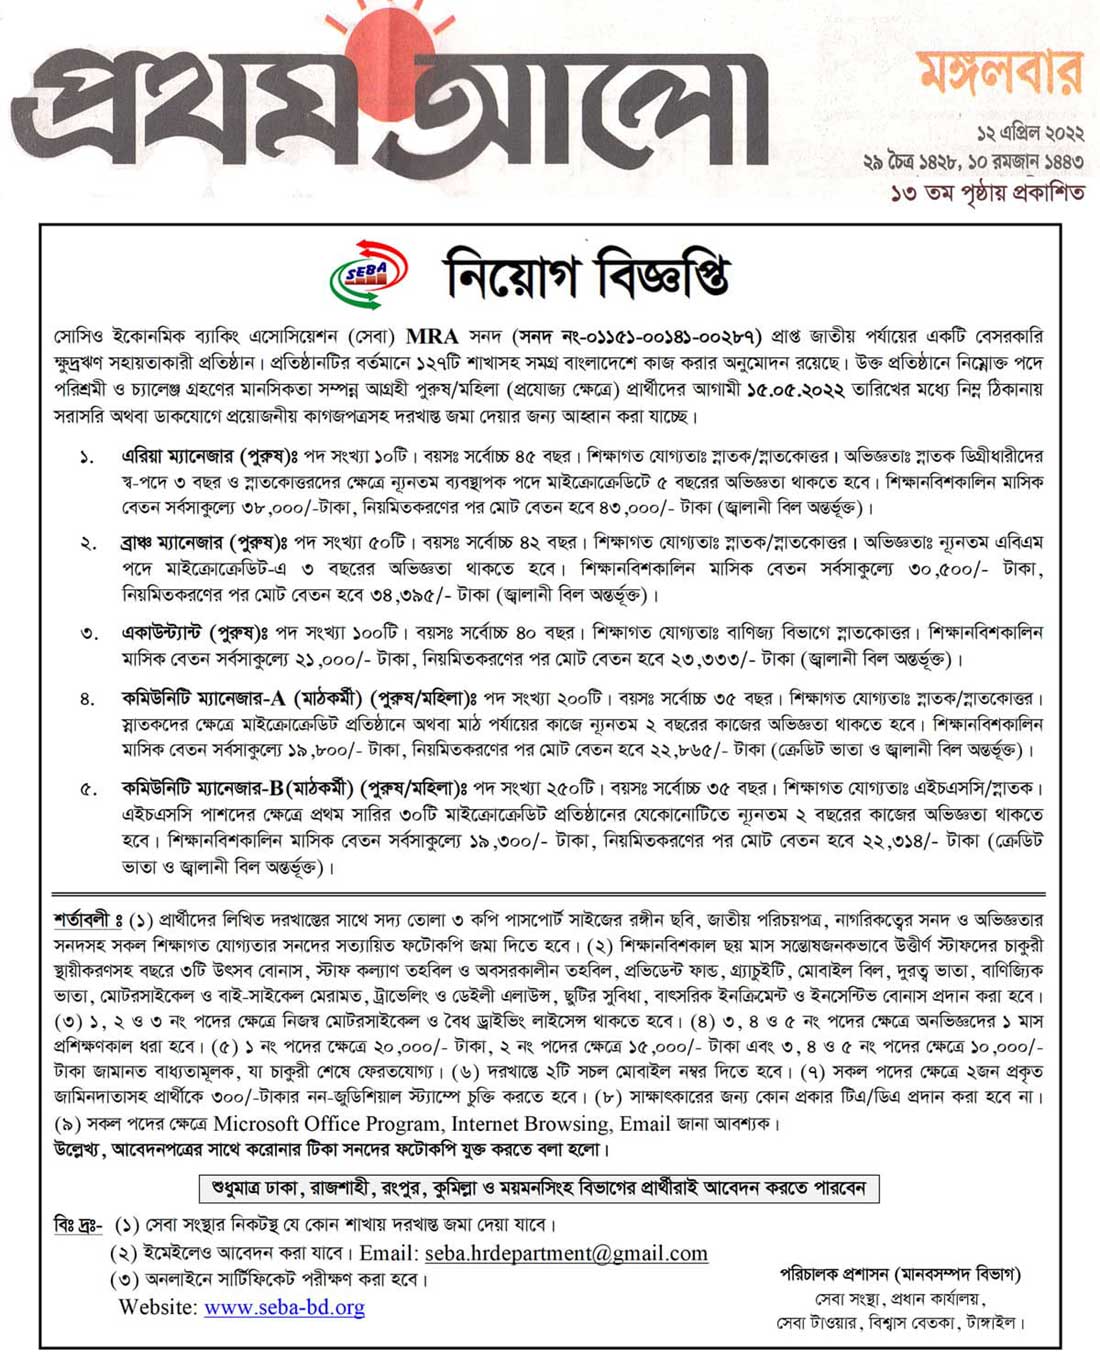 NGO Job Circular 2022 - NGO Job Circular 2022 Bangladesh - এনজিও চাকরির খবর 2022 - এনজিও জব সার্কুলার ২০২২ - এনজিও নিয়োগ বিজ্ঞপ্তি ২০২২